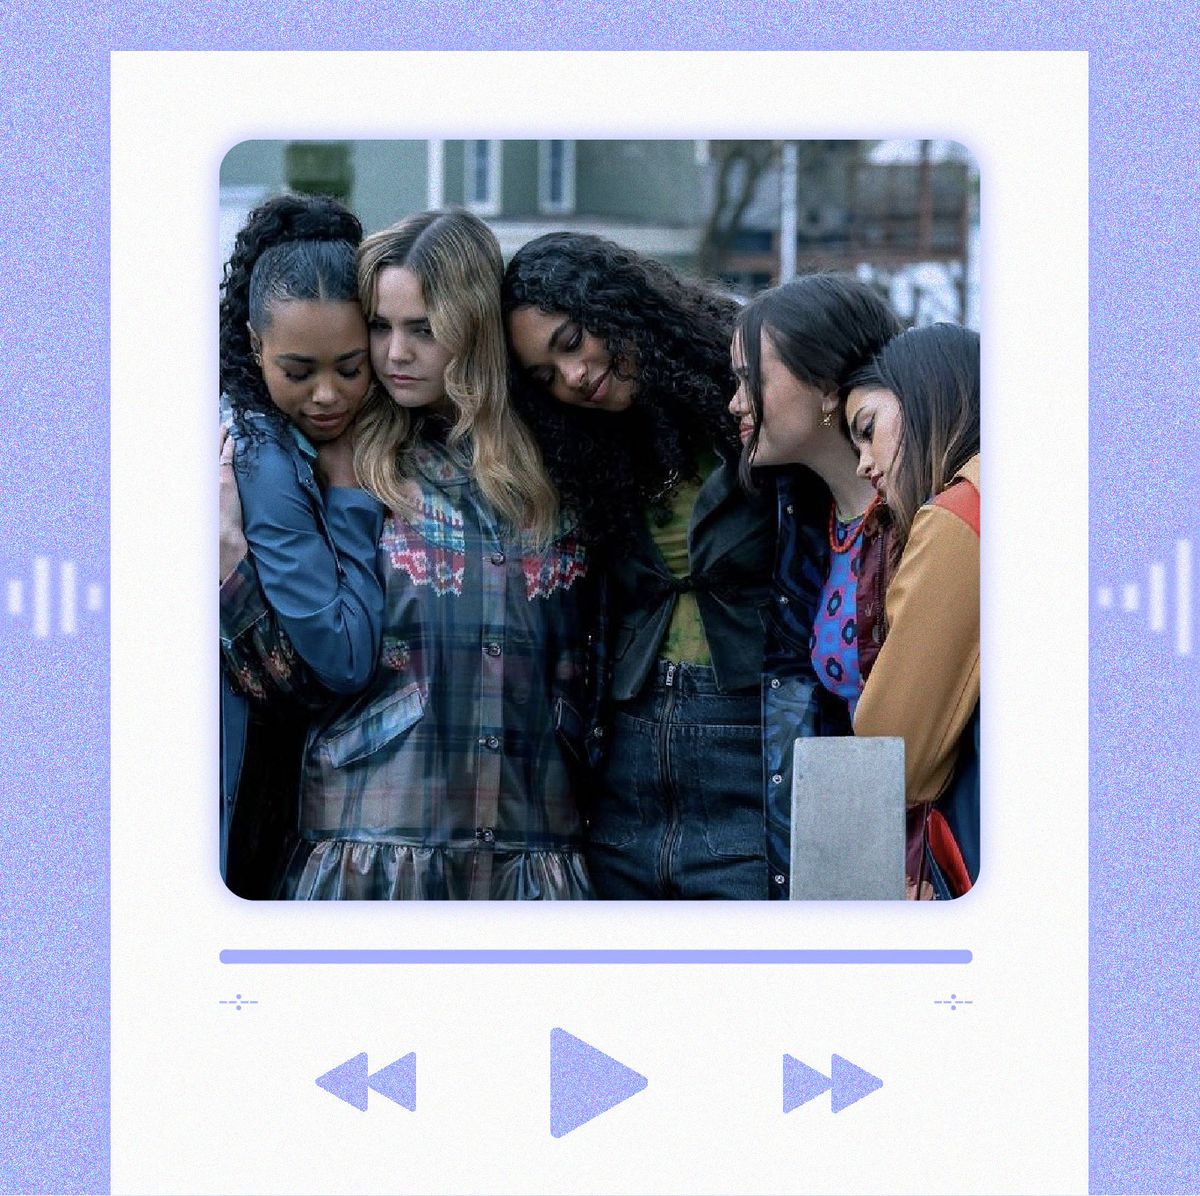 Instagram one-ups TikTok with karaoke lyrics